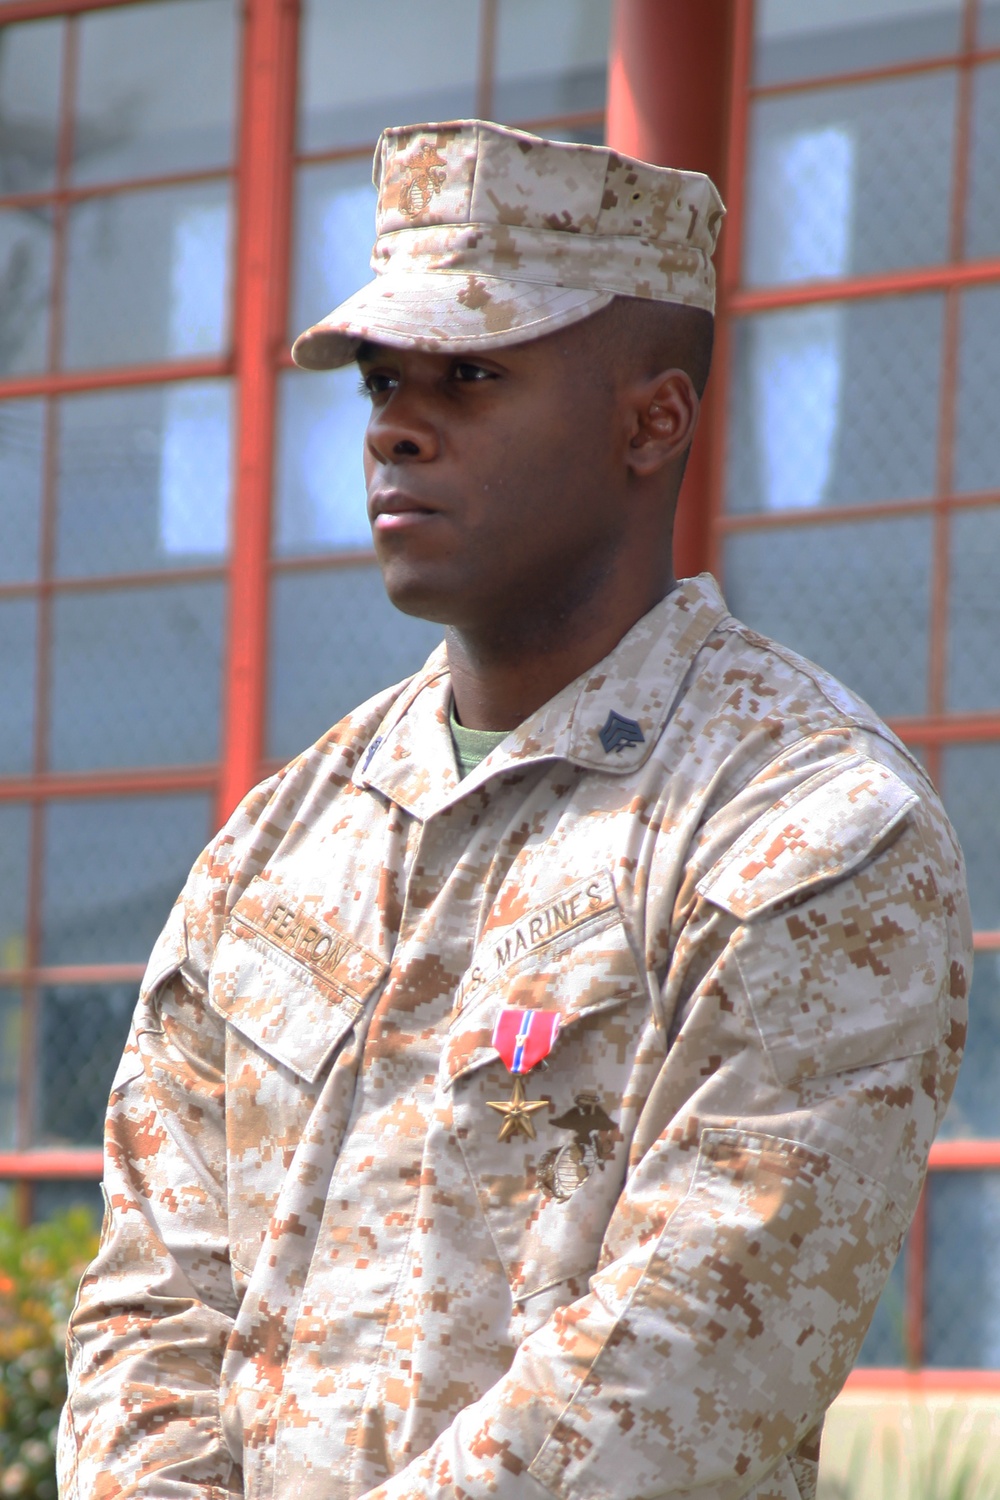 Marine exhibits courage on battlefield, receives Bronze Star